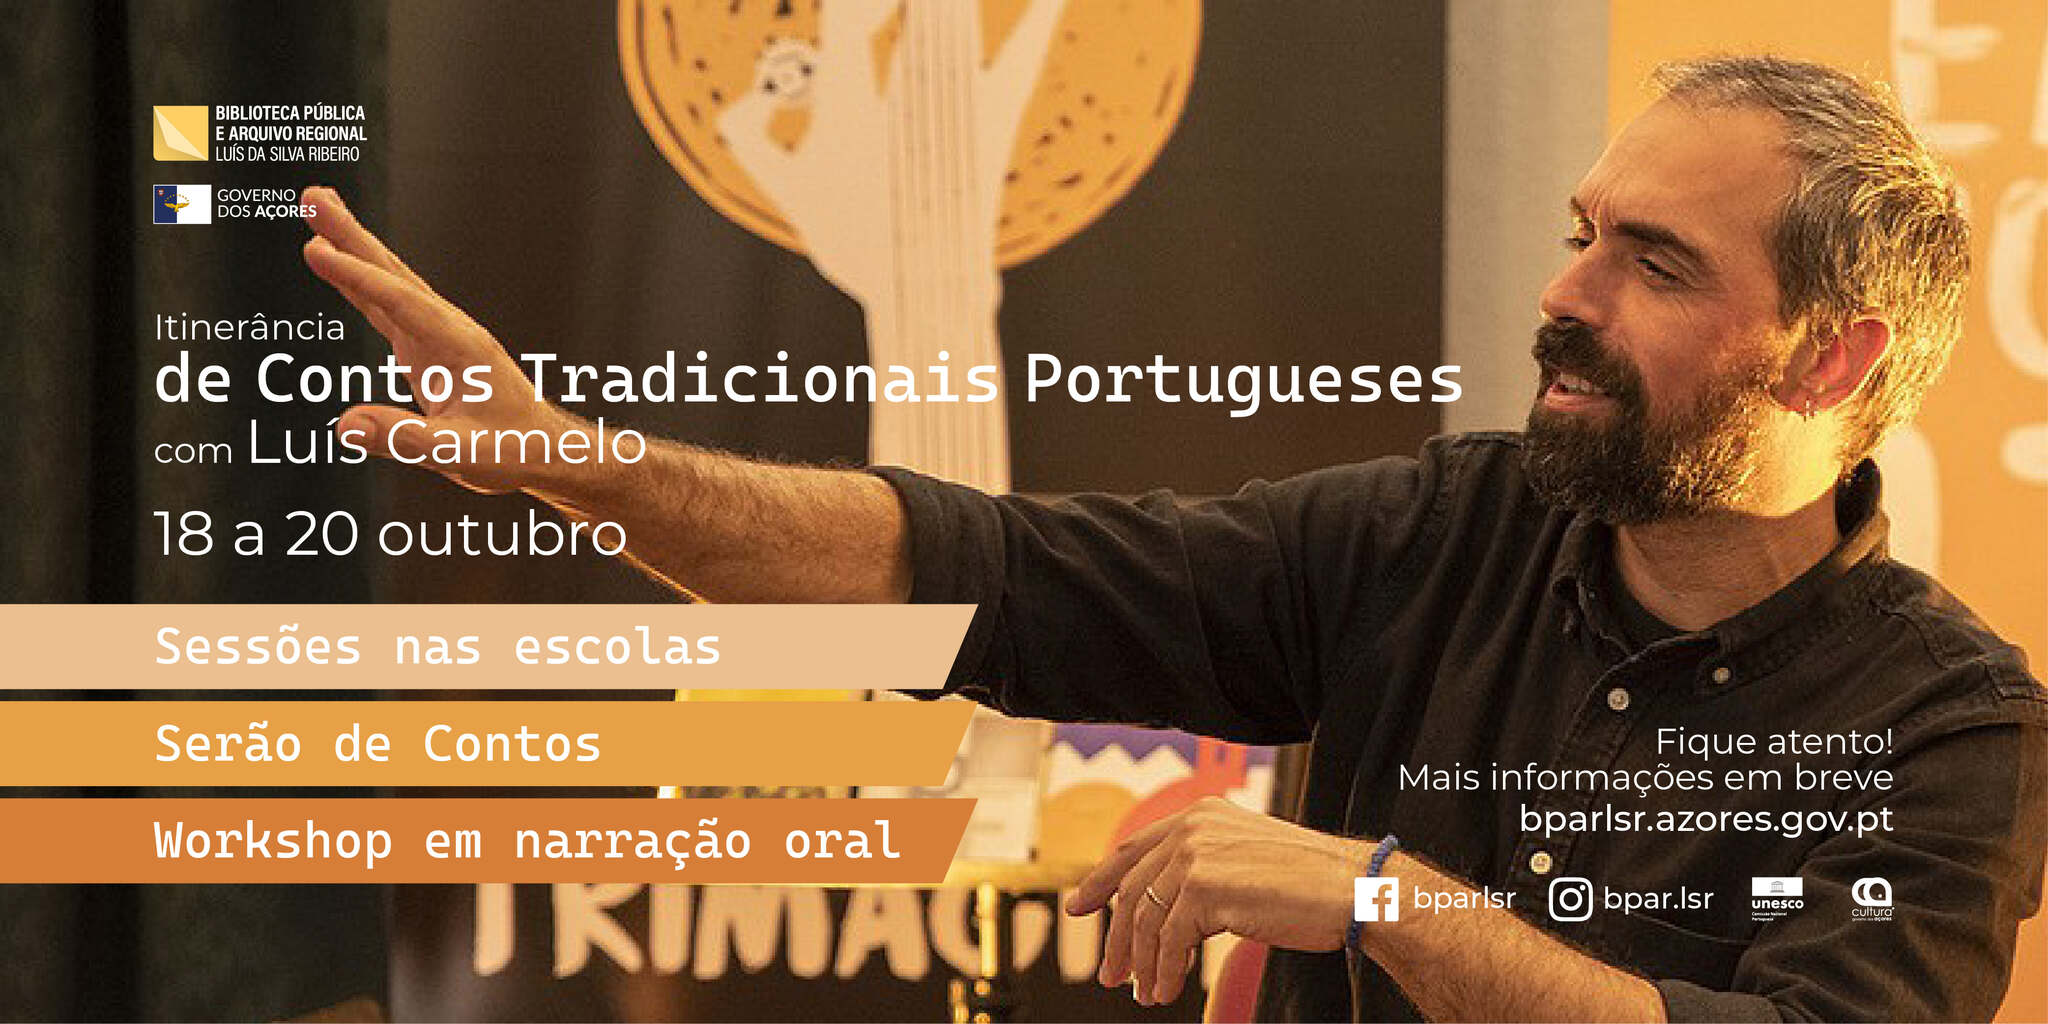 Itinerância de contos tradicionais portugueses com Luís Carmelo